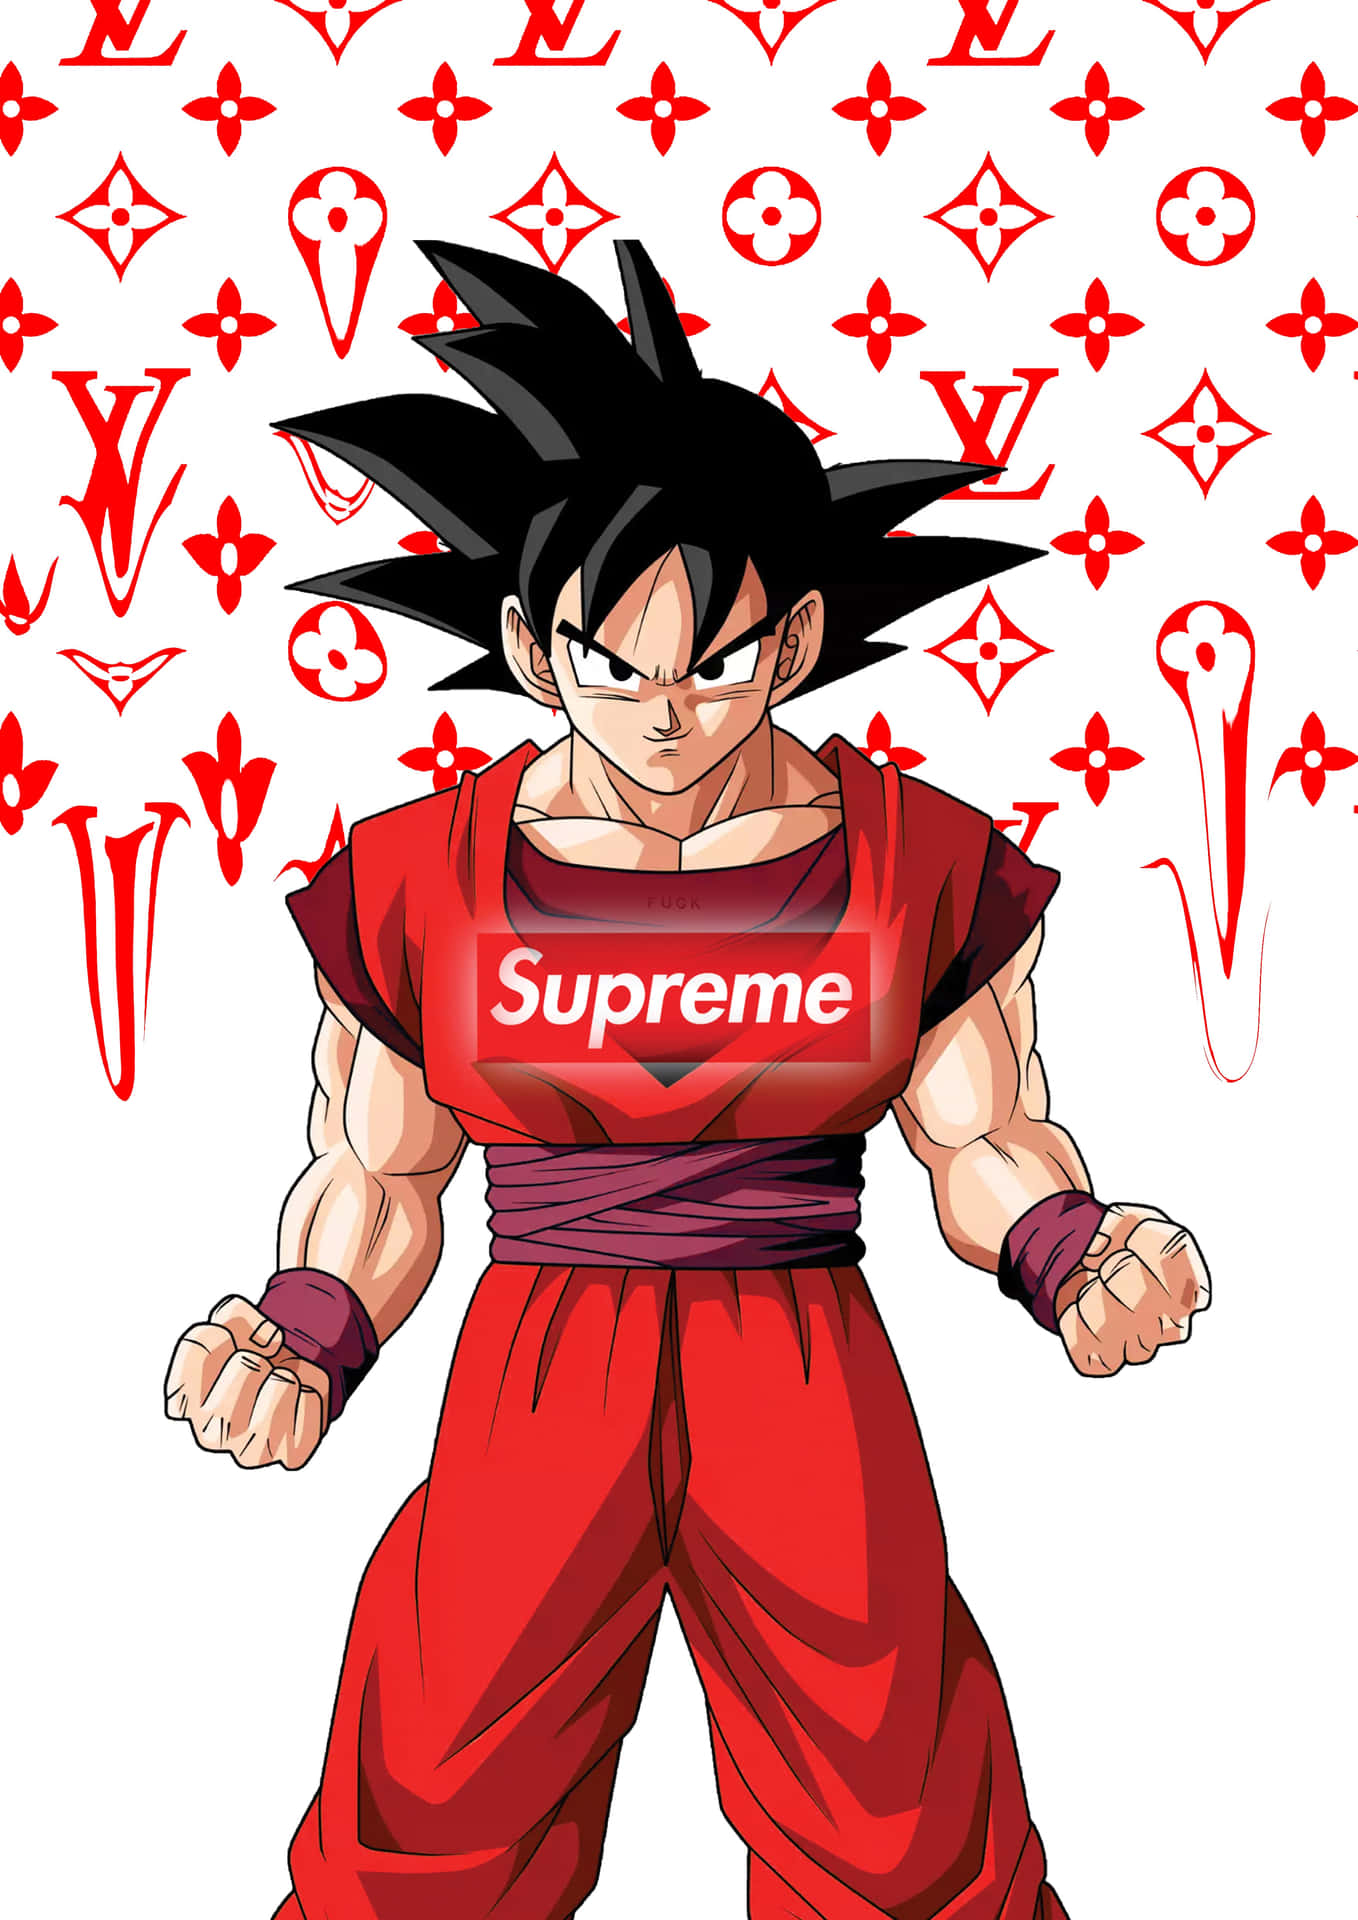 Supreme X Goku made by me  Supreme wallpaper Supreme iphone wallpaper Supreme  wallpaper hd